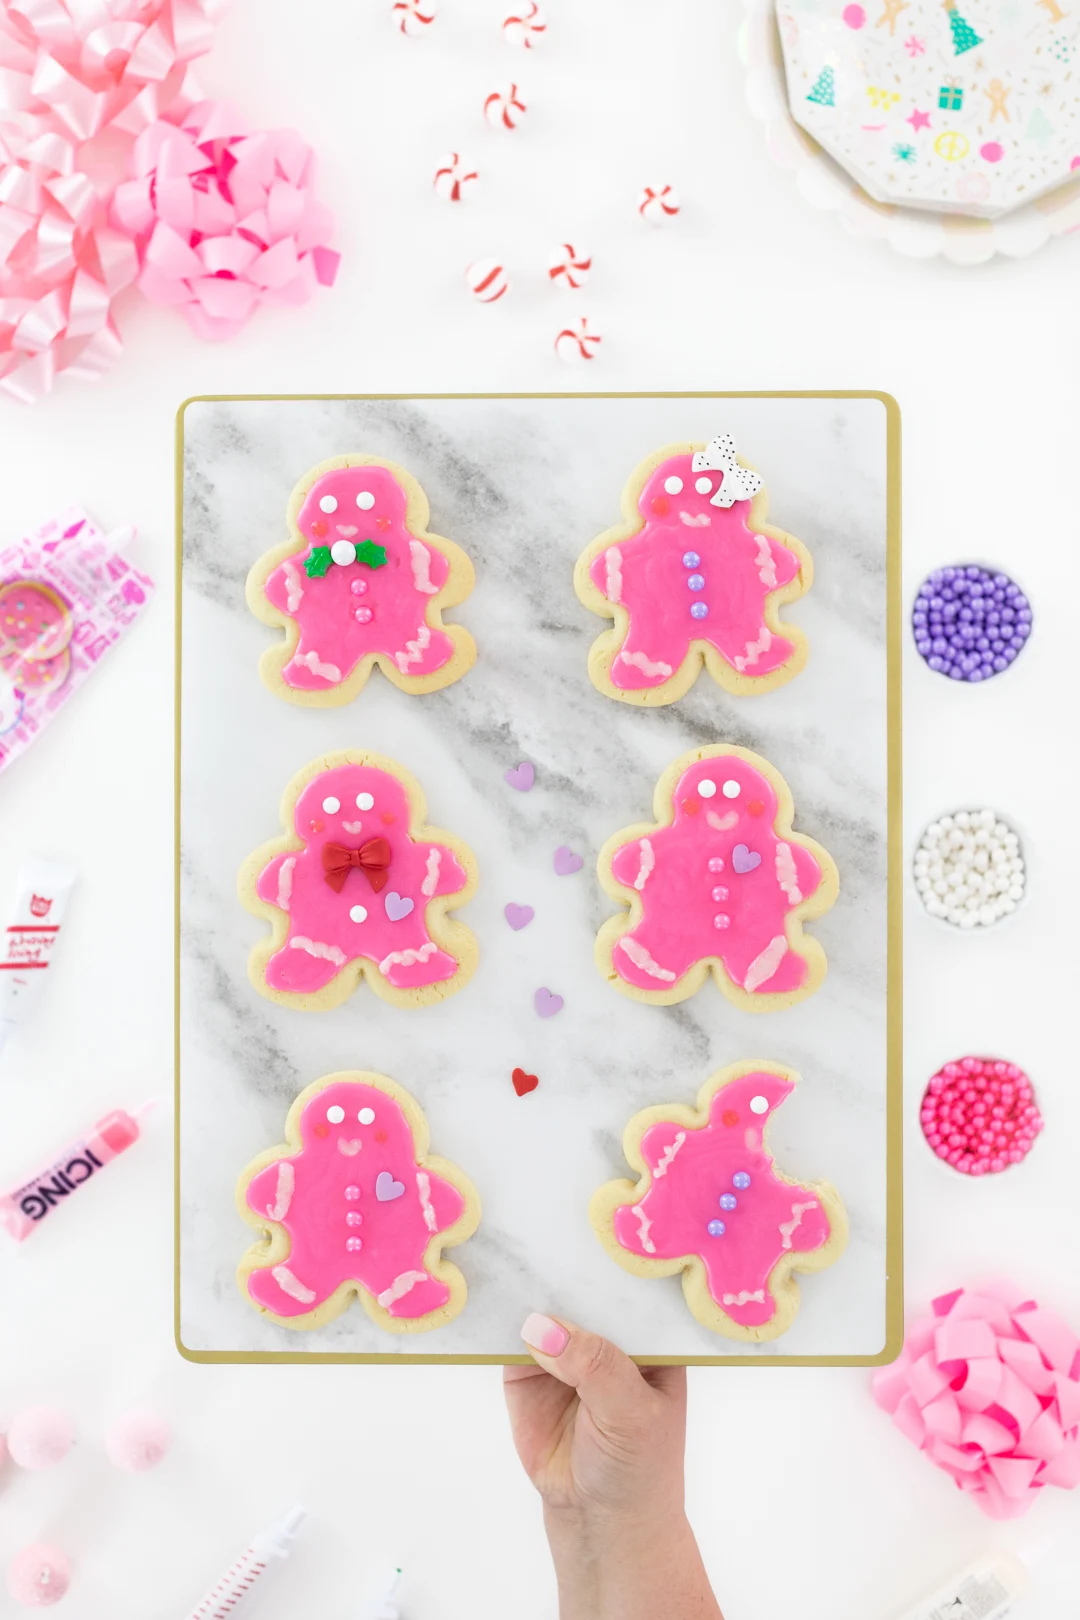 cute pink sugar cookies shaped like gingerbread men